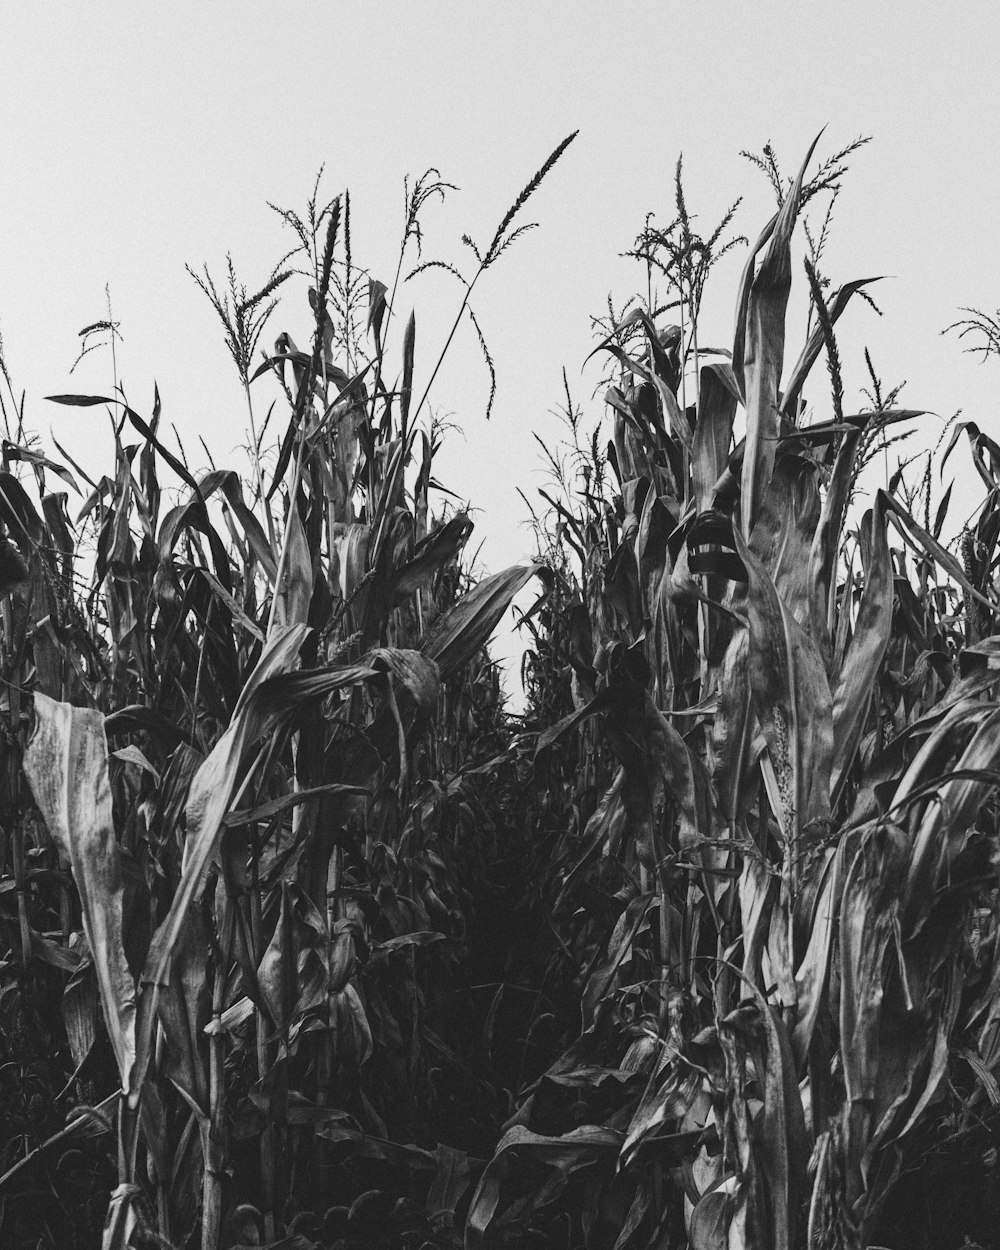 Photographie en niveaux de gris d’un champ de maïs